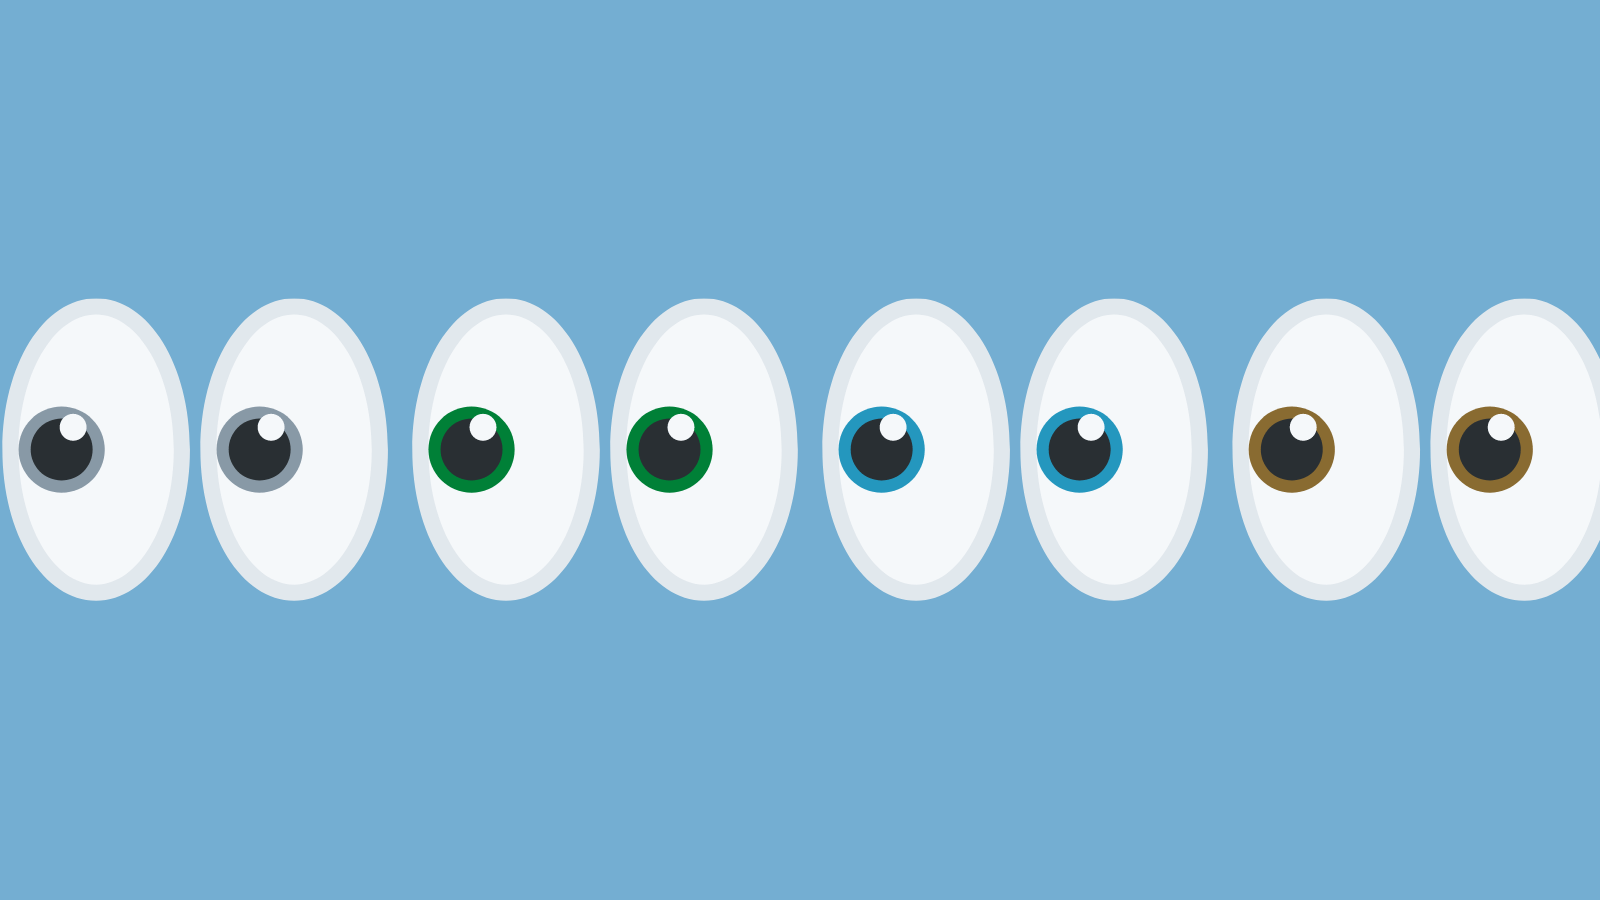 A line of eyeballs emojis